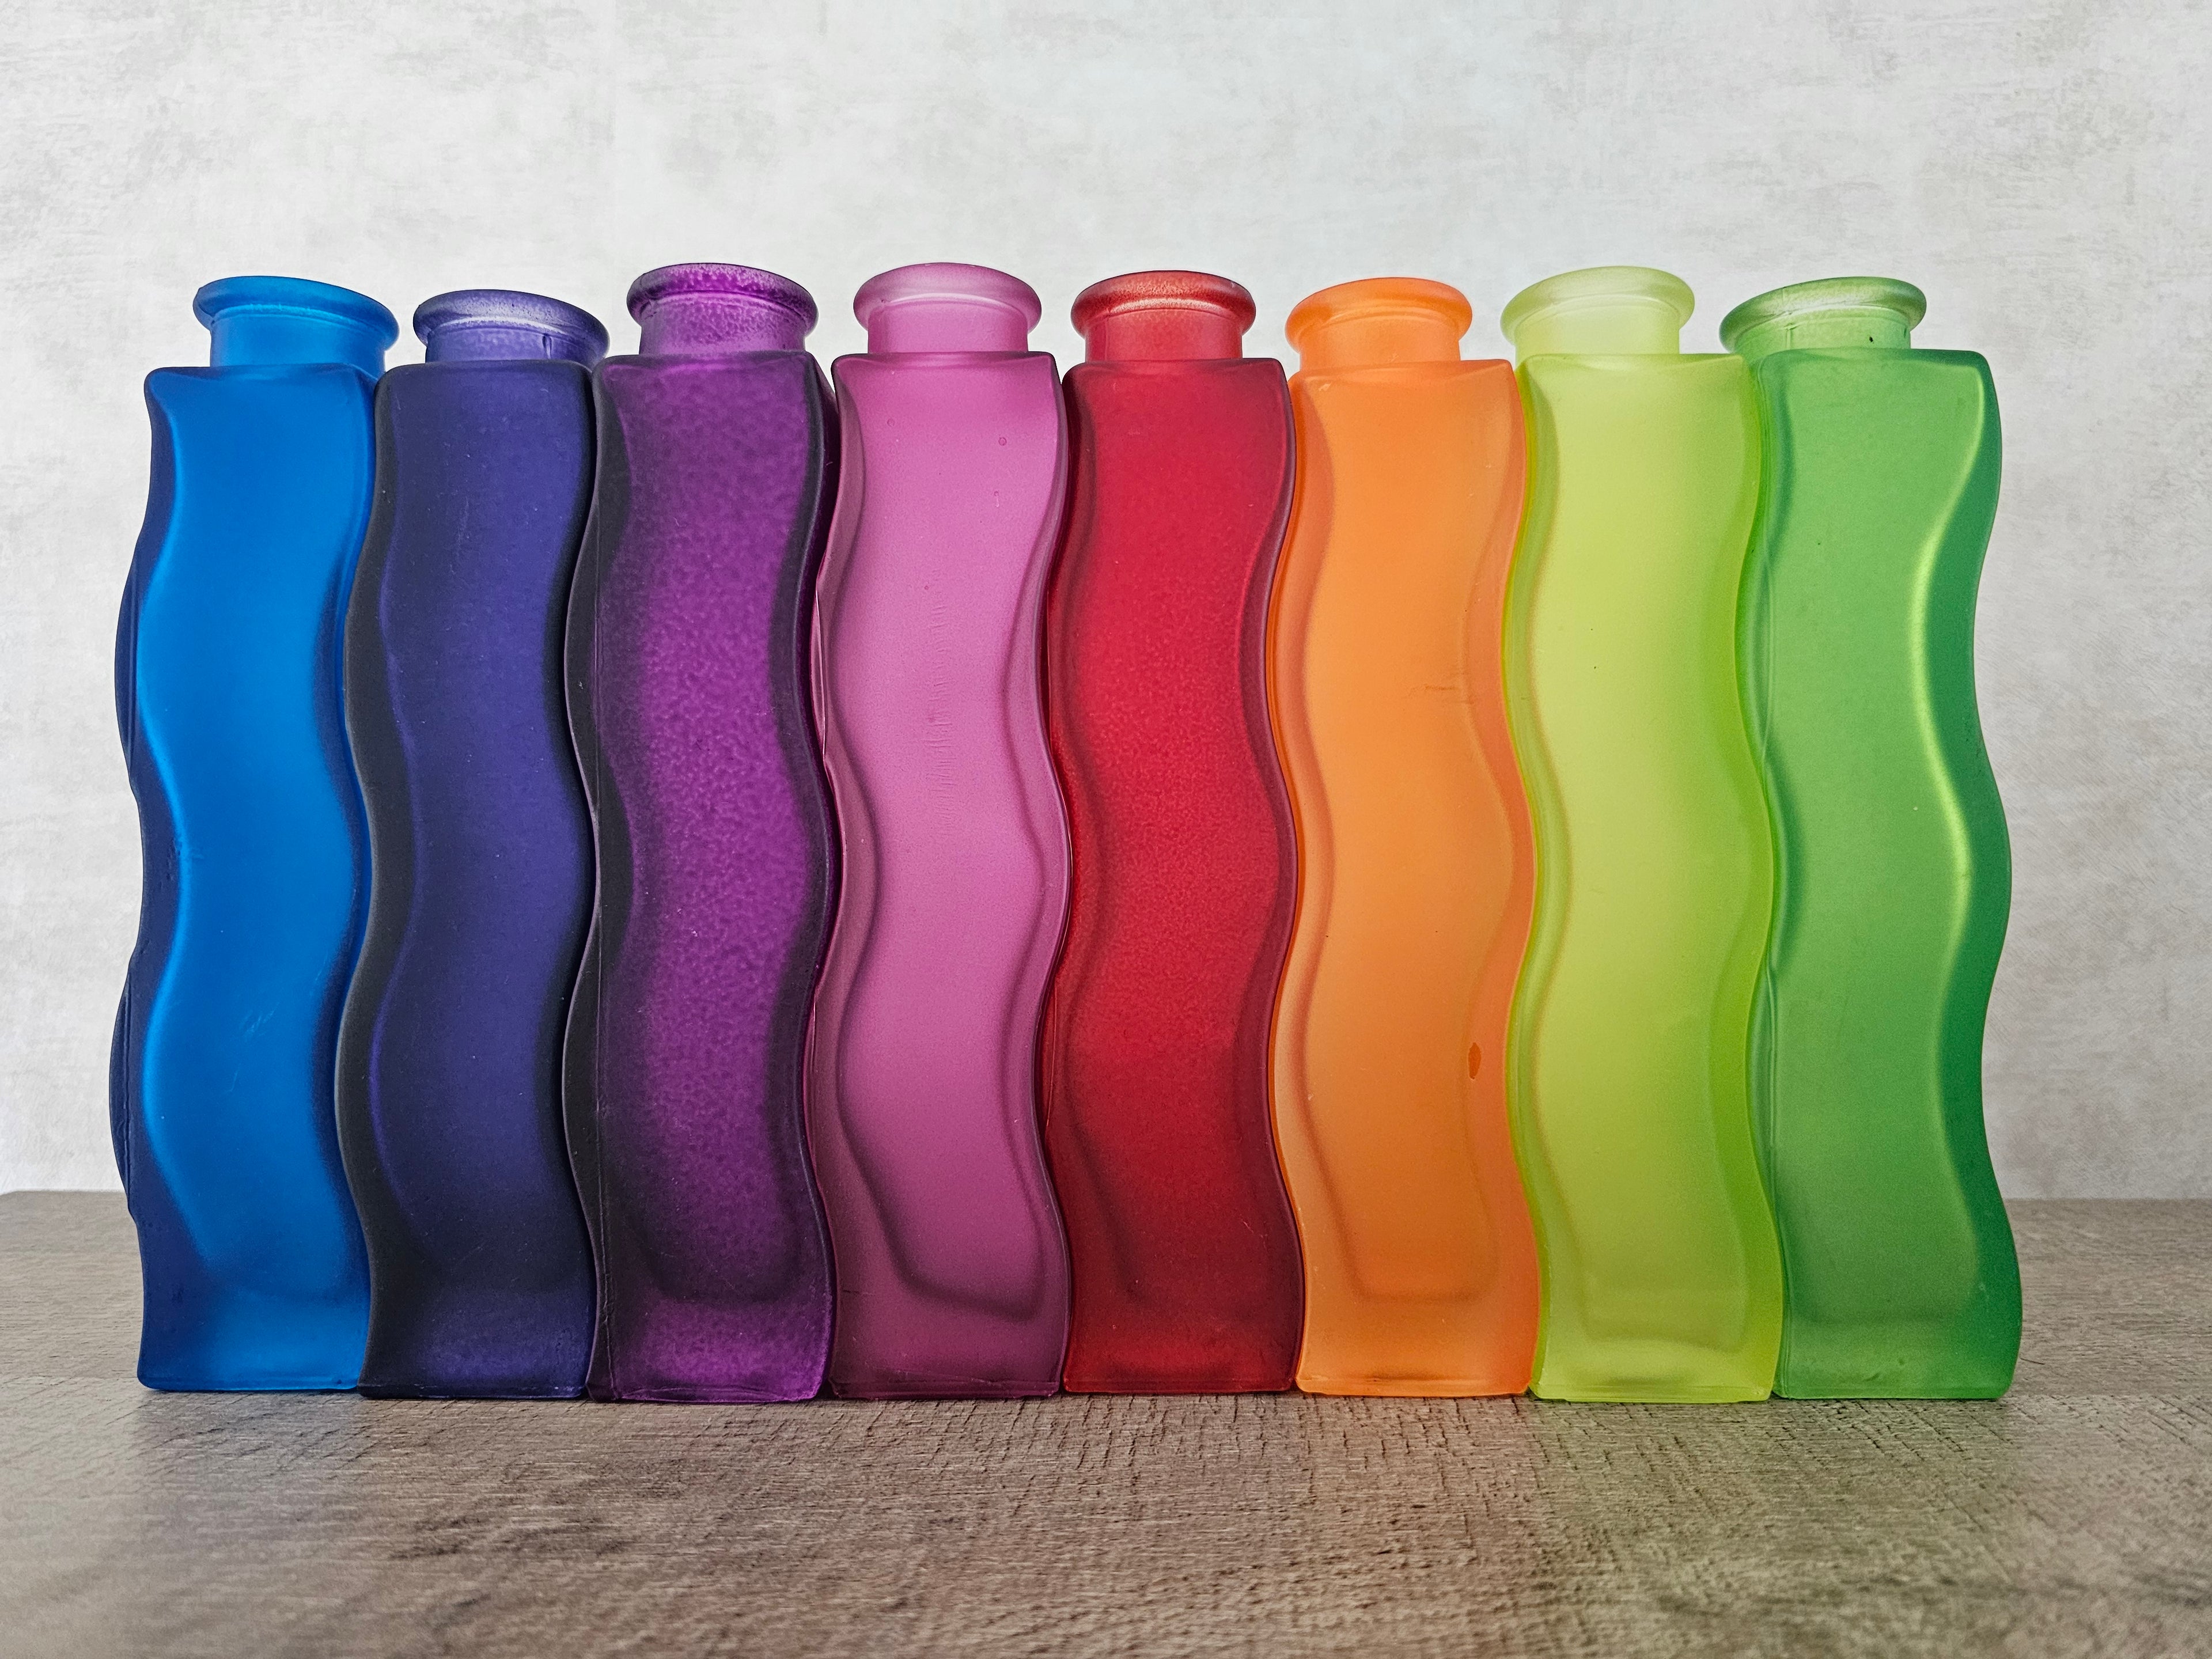 Ikea Skämt glazen kronkelde vaasjes diverse kleuren